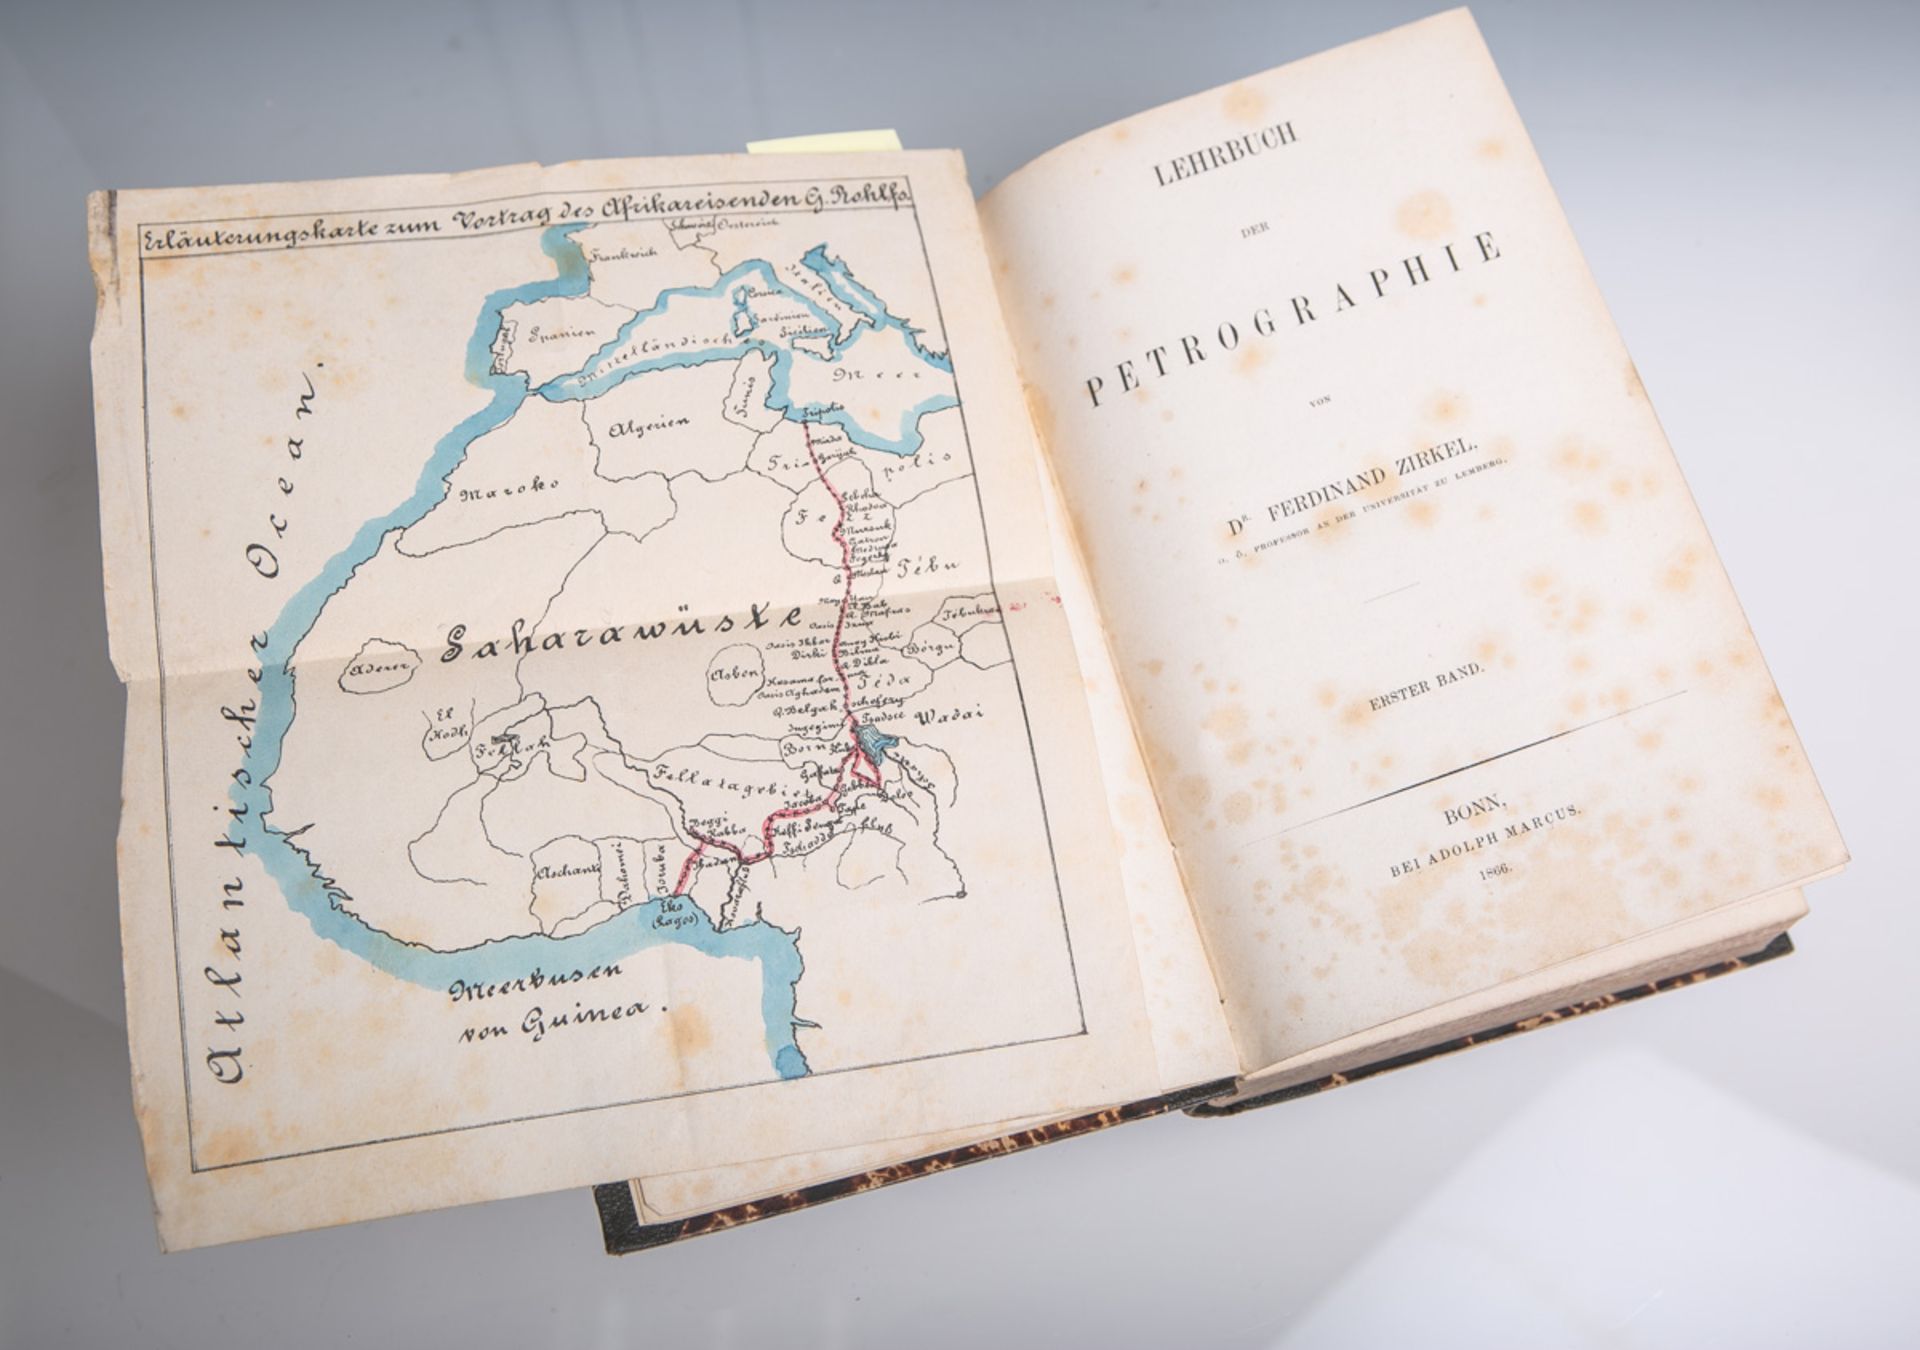 Zirkel, Ferdinand Dr., "Lehrbuch der Petrographie" in 2 Bänden